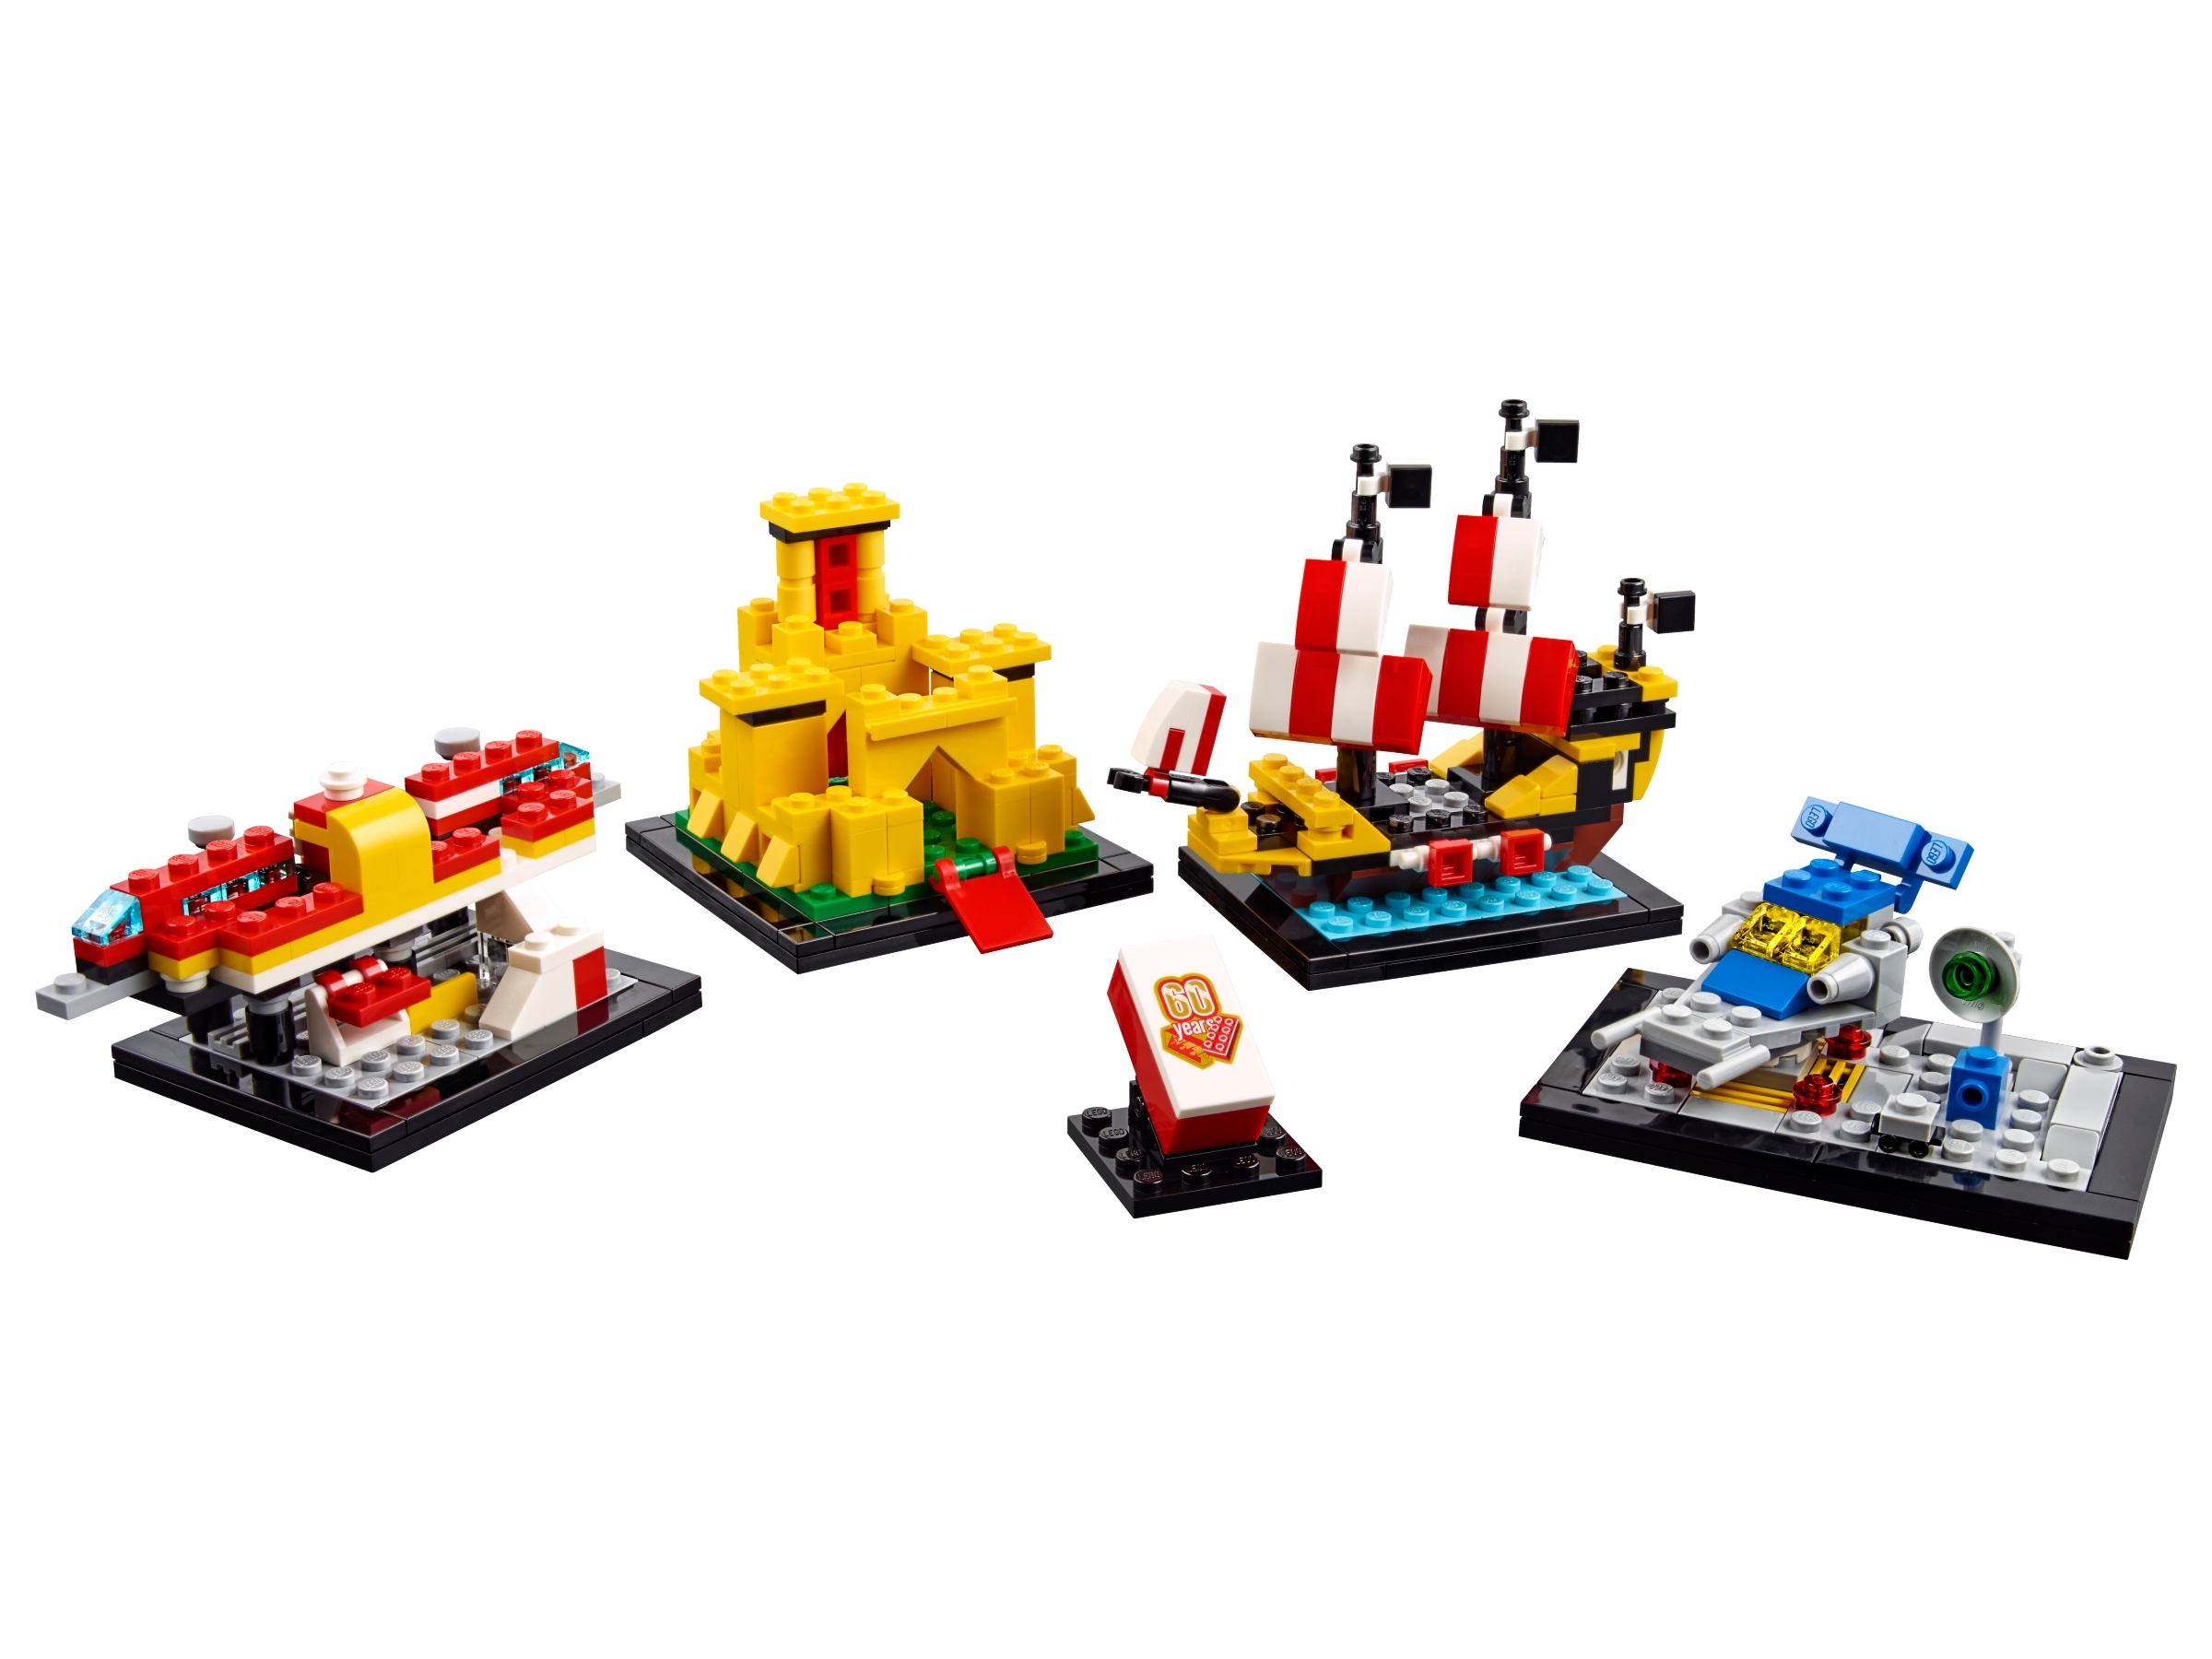 LEGO 40290 set 60 years anniversario Lego NUOVO ESCLUSIVO DISPONIBILE 